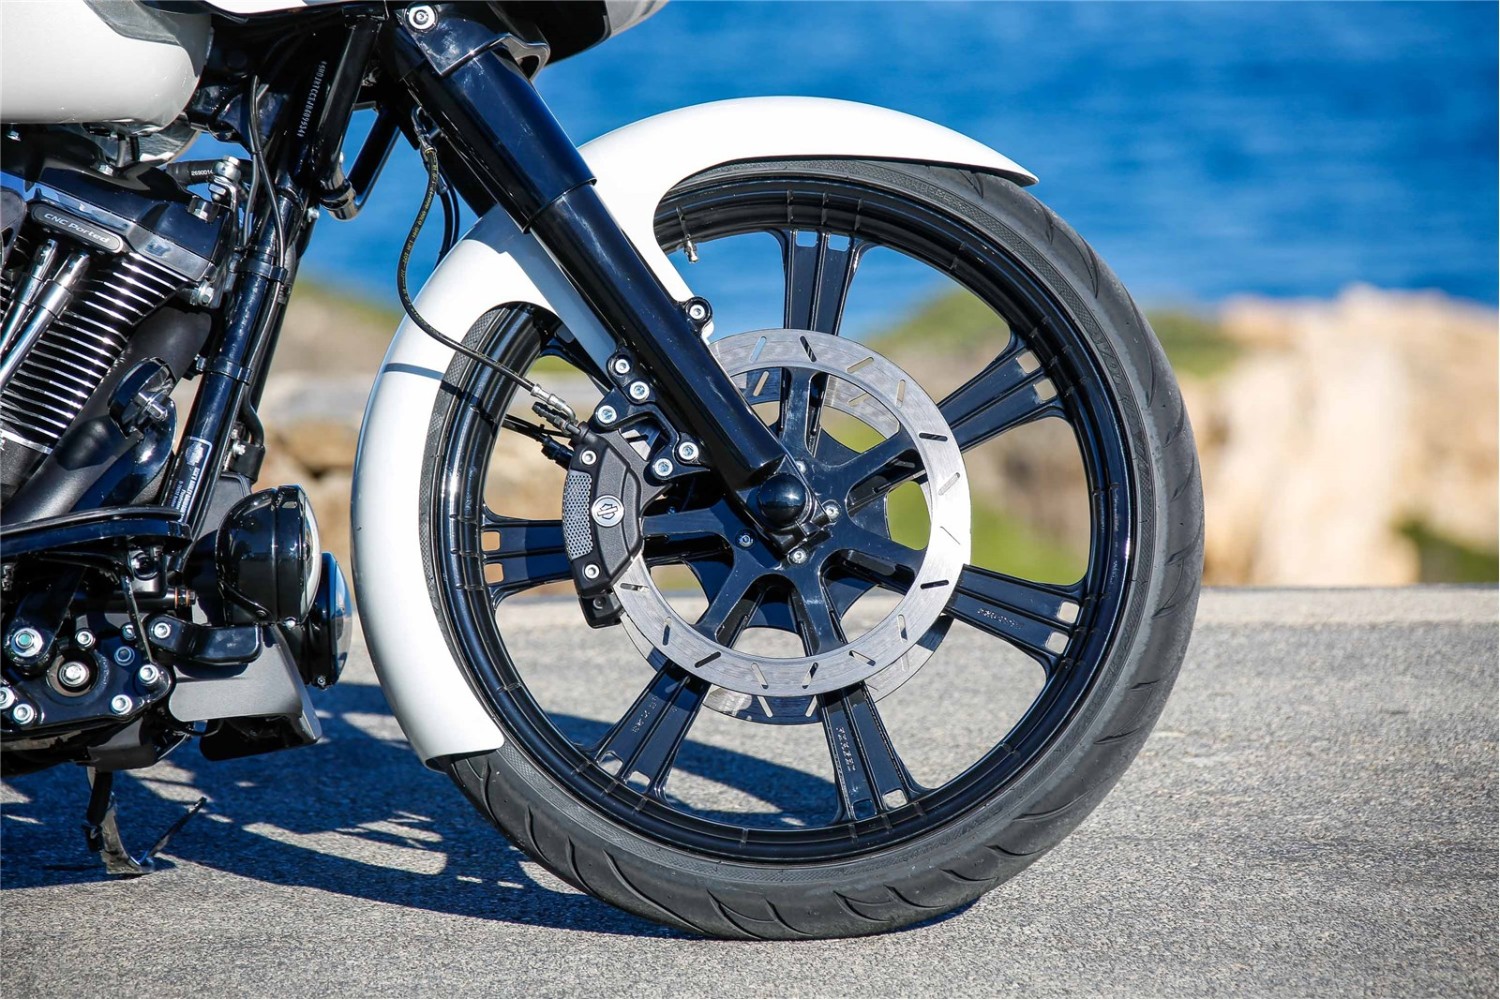 Ricks Harley-Davidson "Seven Sins" 13" 330mm poliert Bremsscheibe Motorrad 